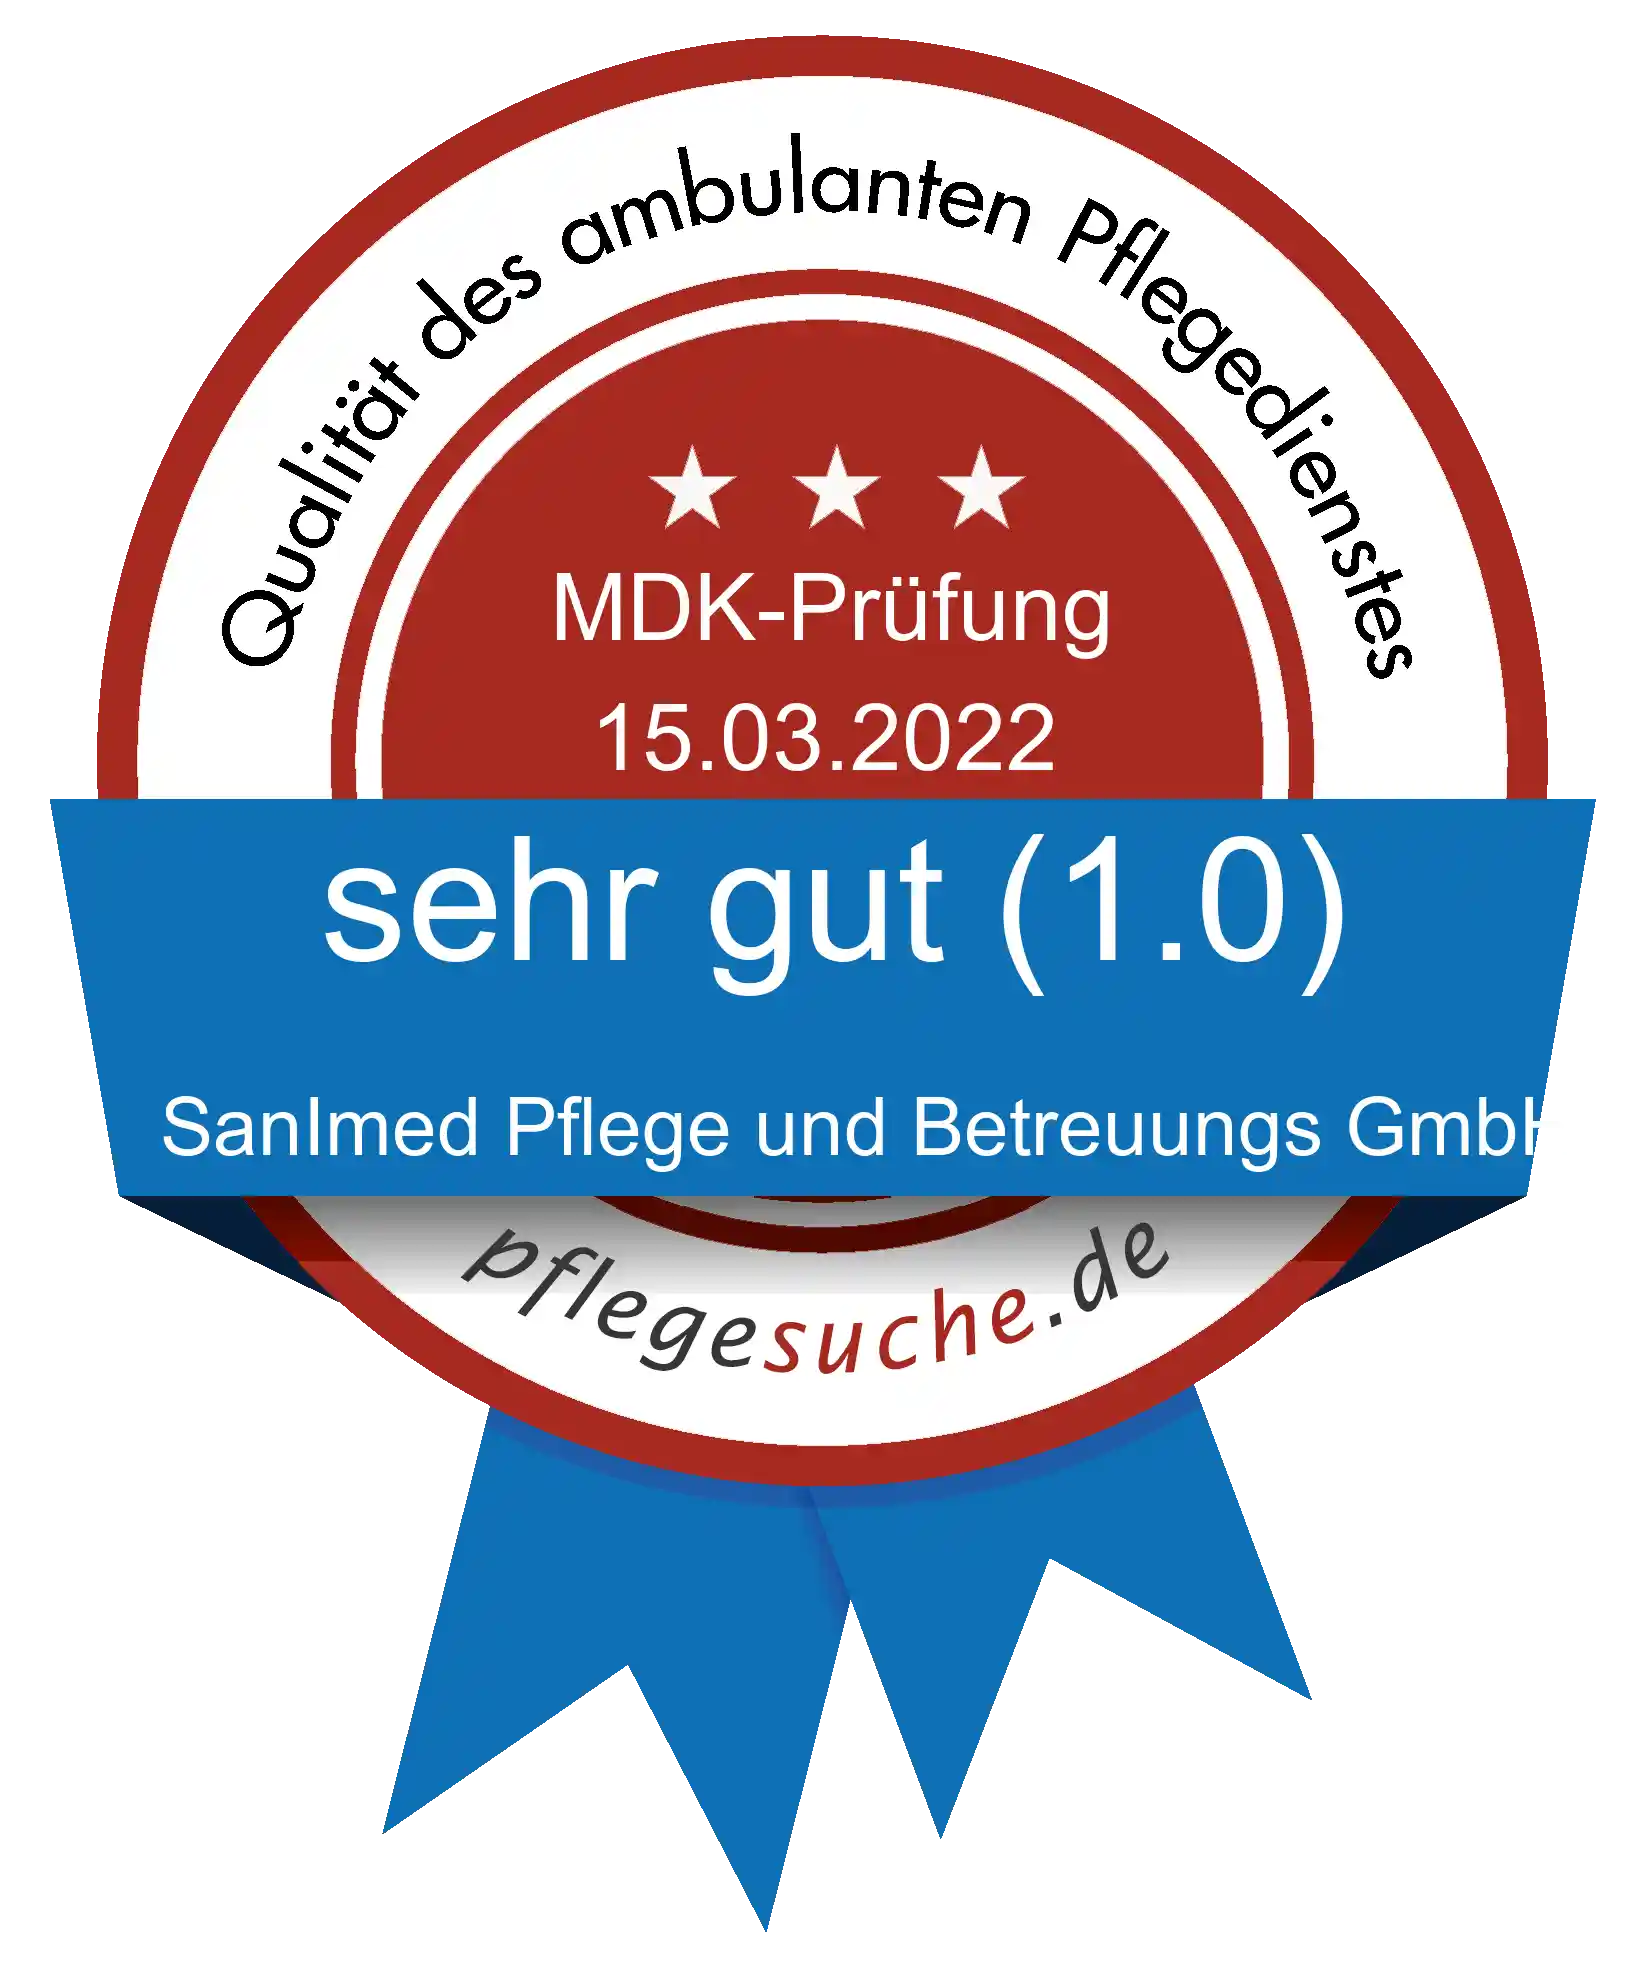 Siegel Benotung SanImed Pflege und Betreuungs GmbH